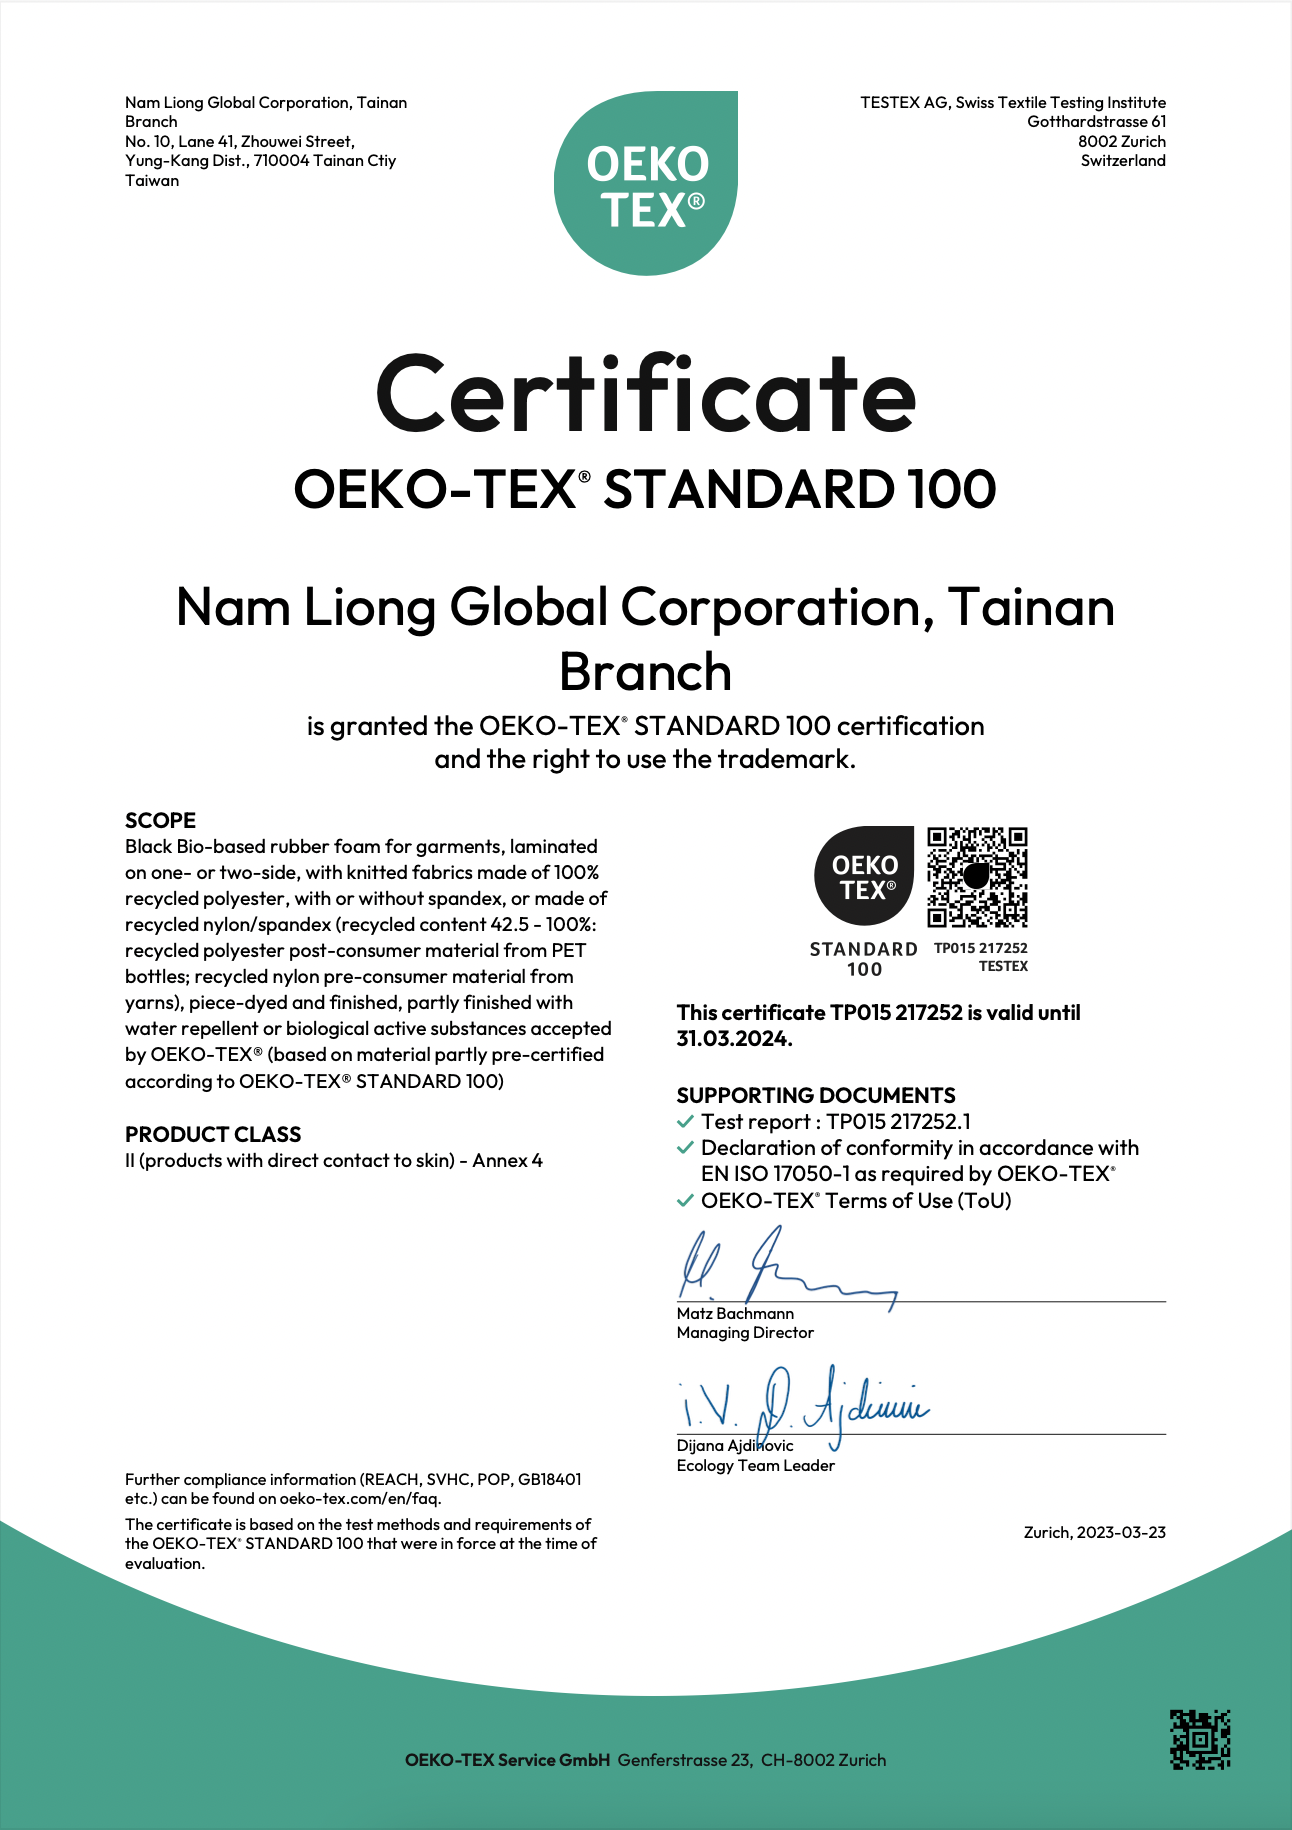 具有Oeko-Tex Standard 100®認證